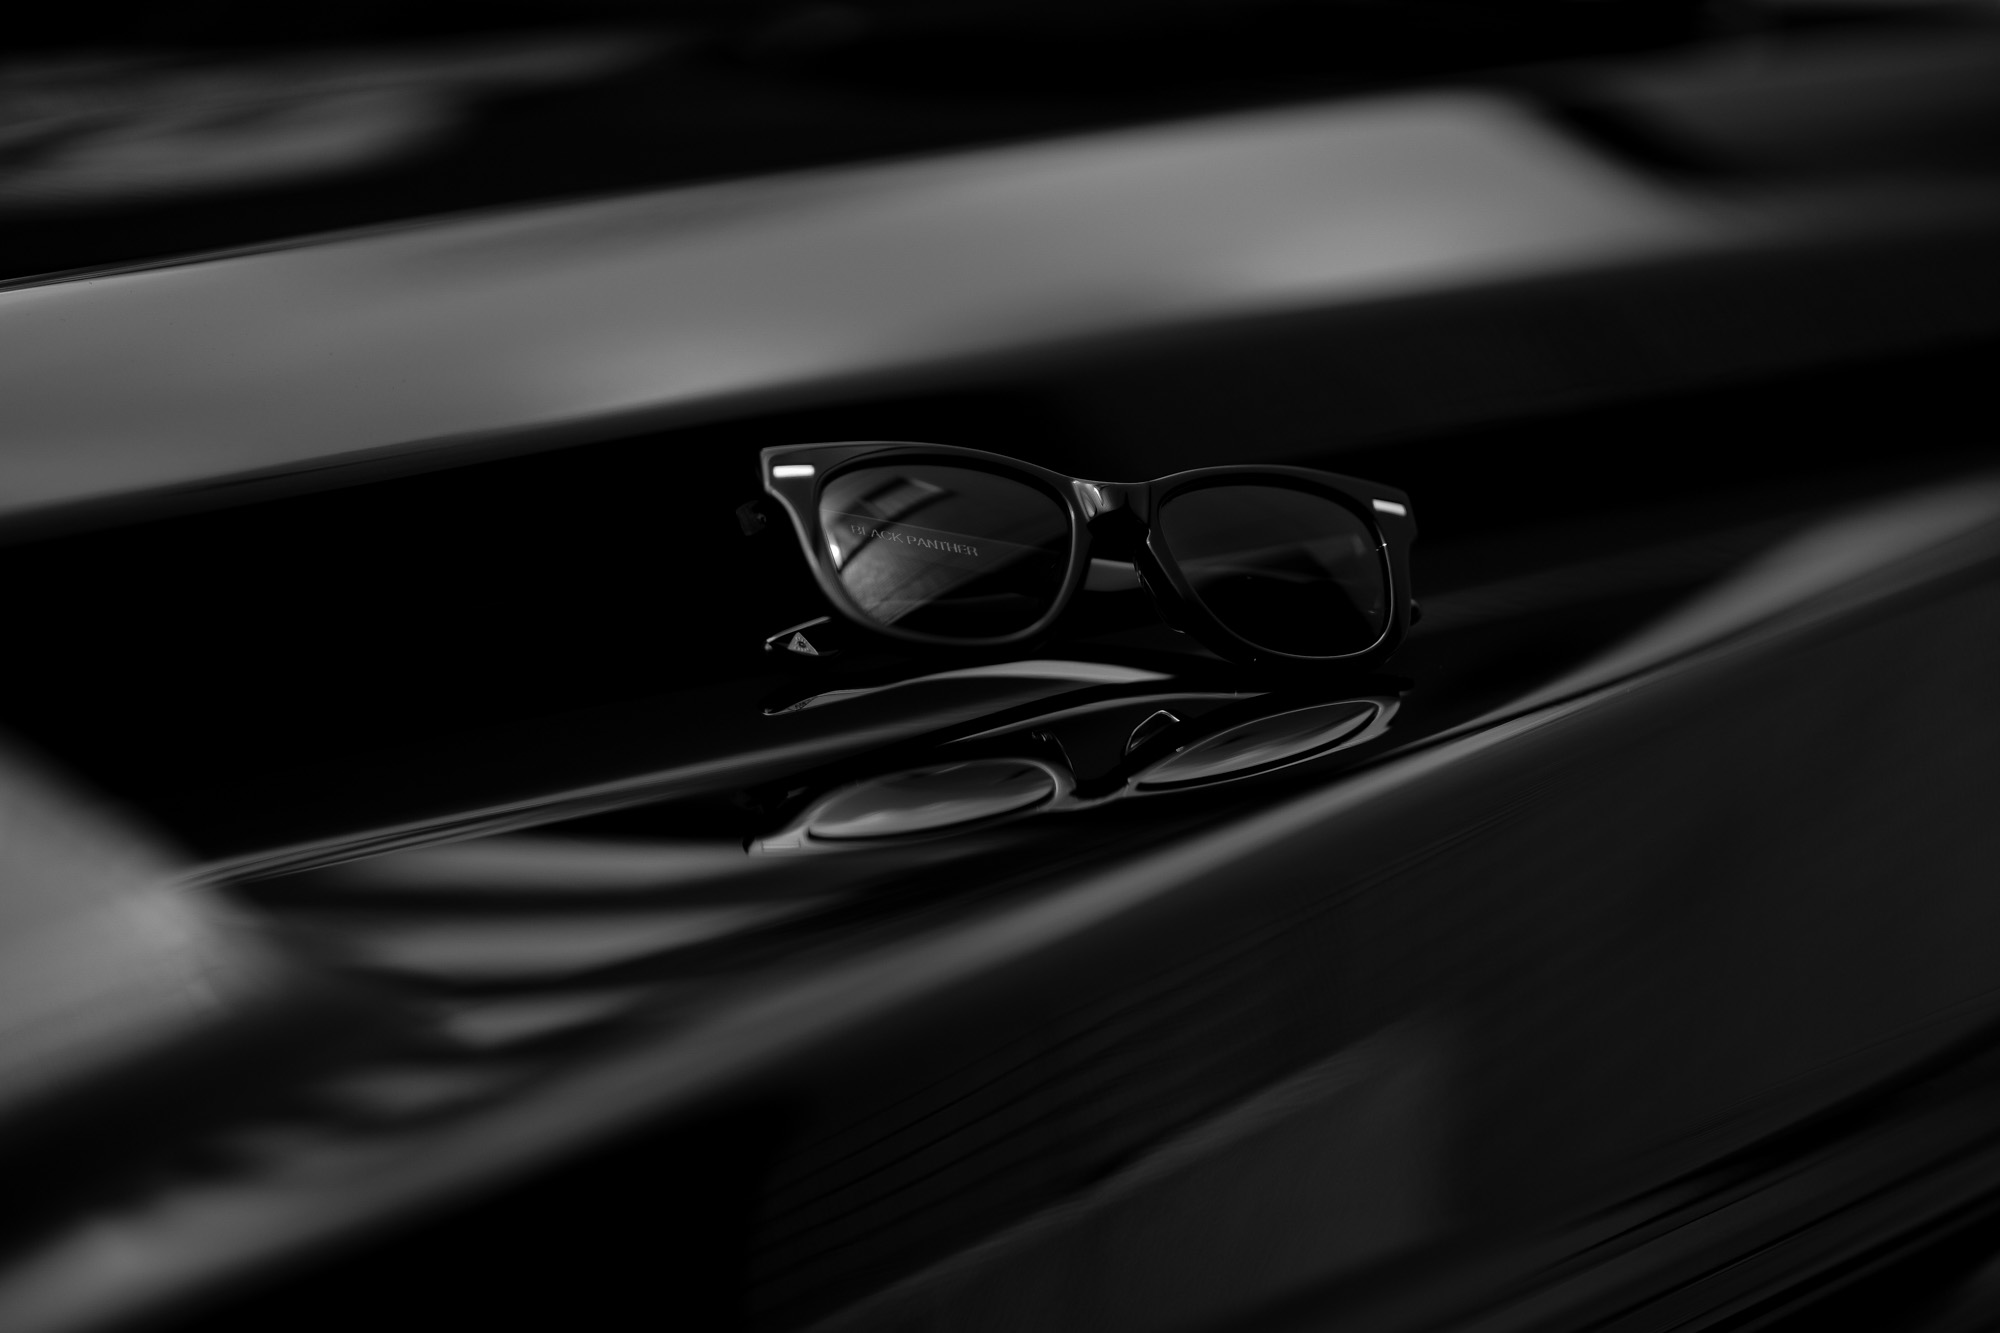 FIXER(フィクサー) BLACK PANTHER(ブラックパンサー) 925 STERLING SILVER サングラス BLACK (ブラック) 愛知 名古屋 Alto e Diritto アルトエデリット 眼鏡 グラサン 925スターリングシルバー スペシャルモデル sunglasses